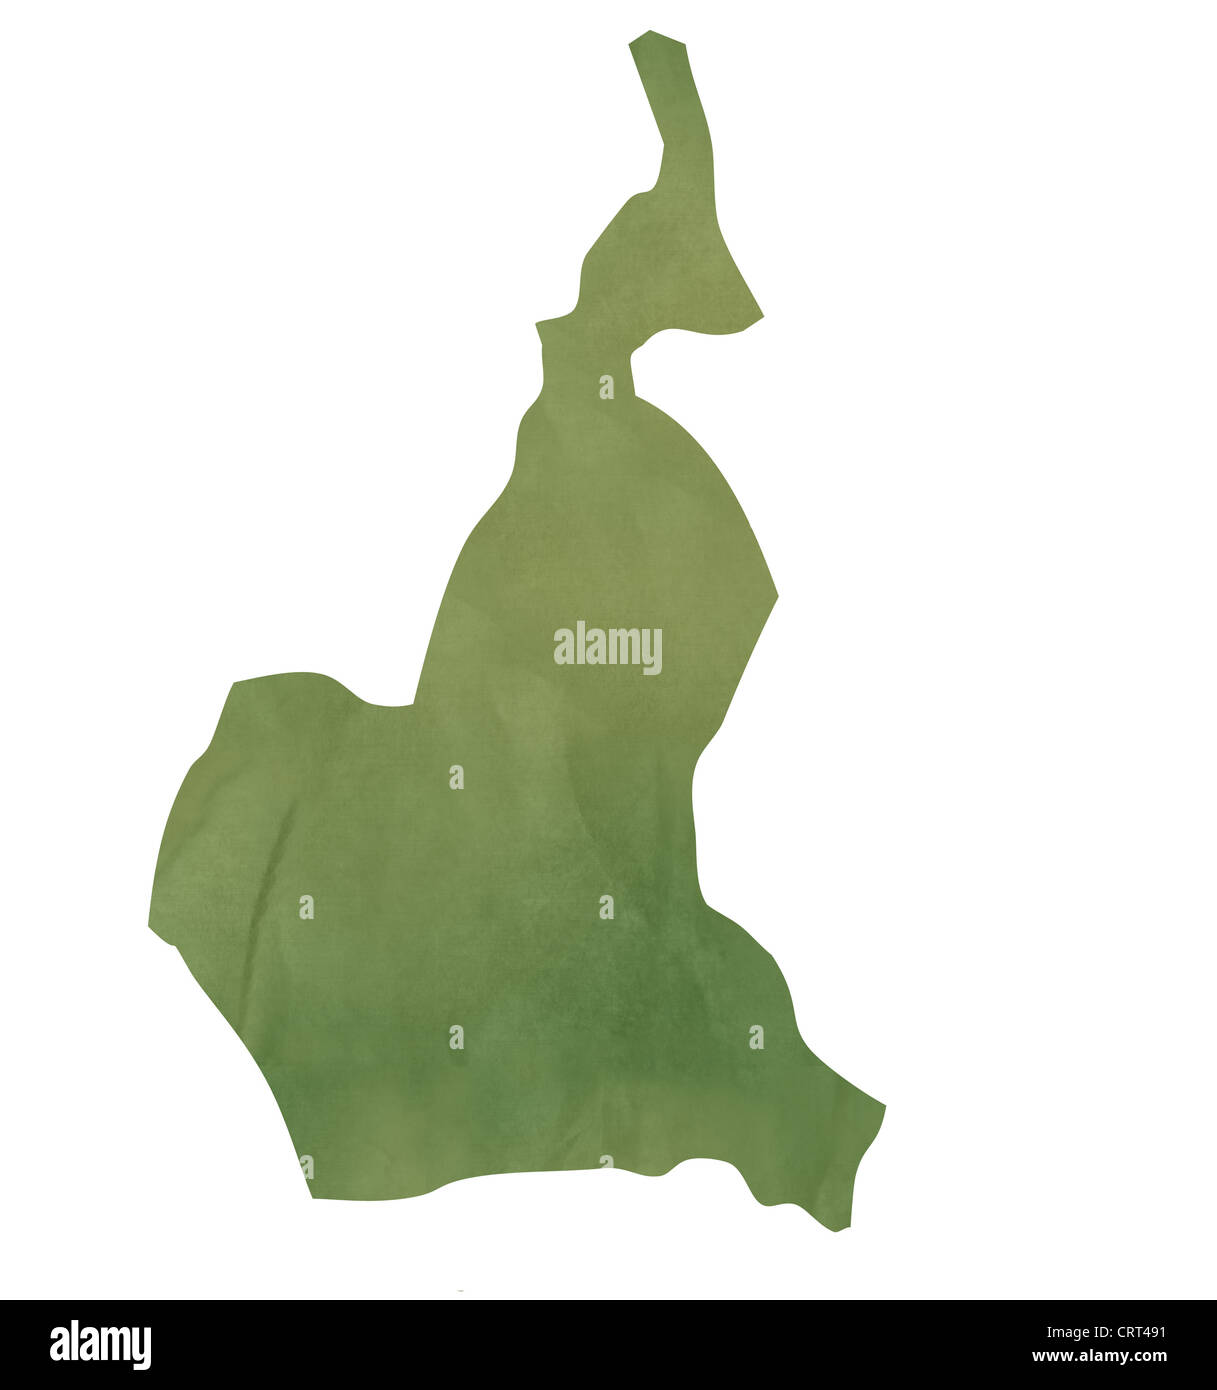 Alte grüne Papierkarte von Kamerun isoliert auf weißem Hintergrund Stockfoto